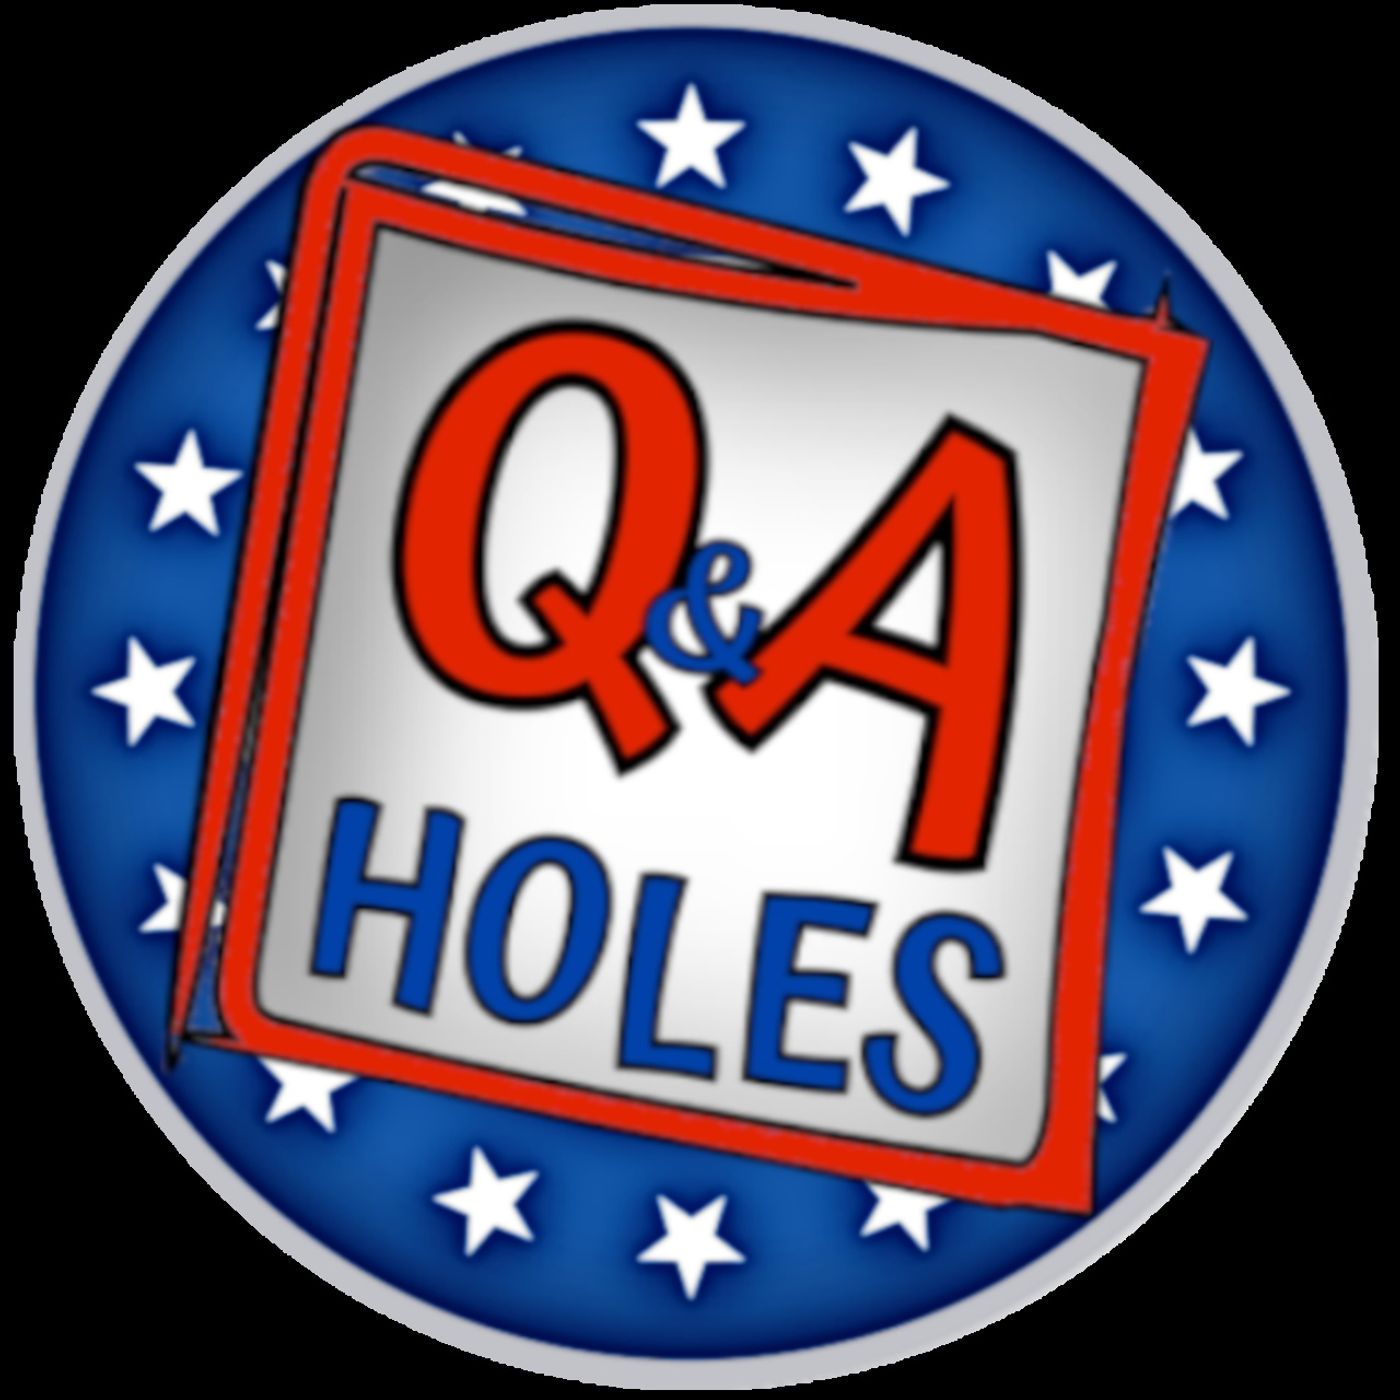 Q&A Holes